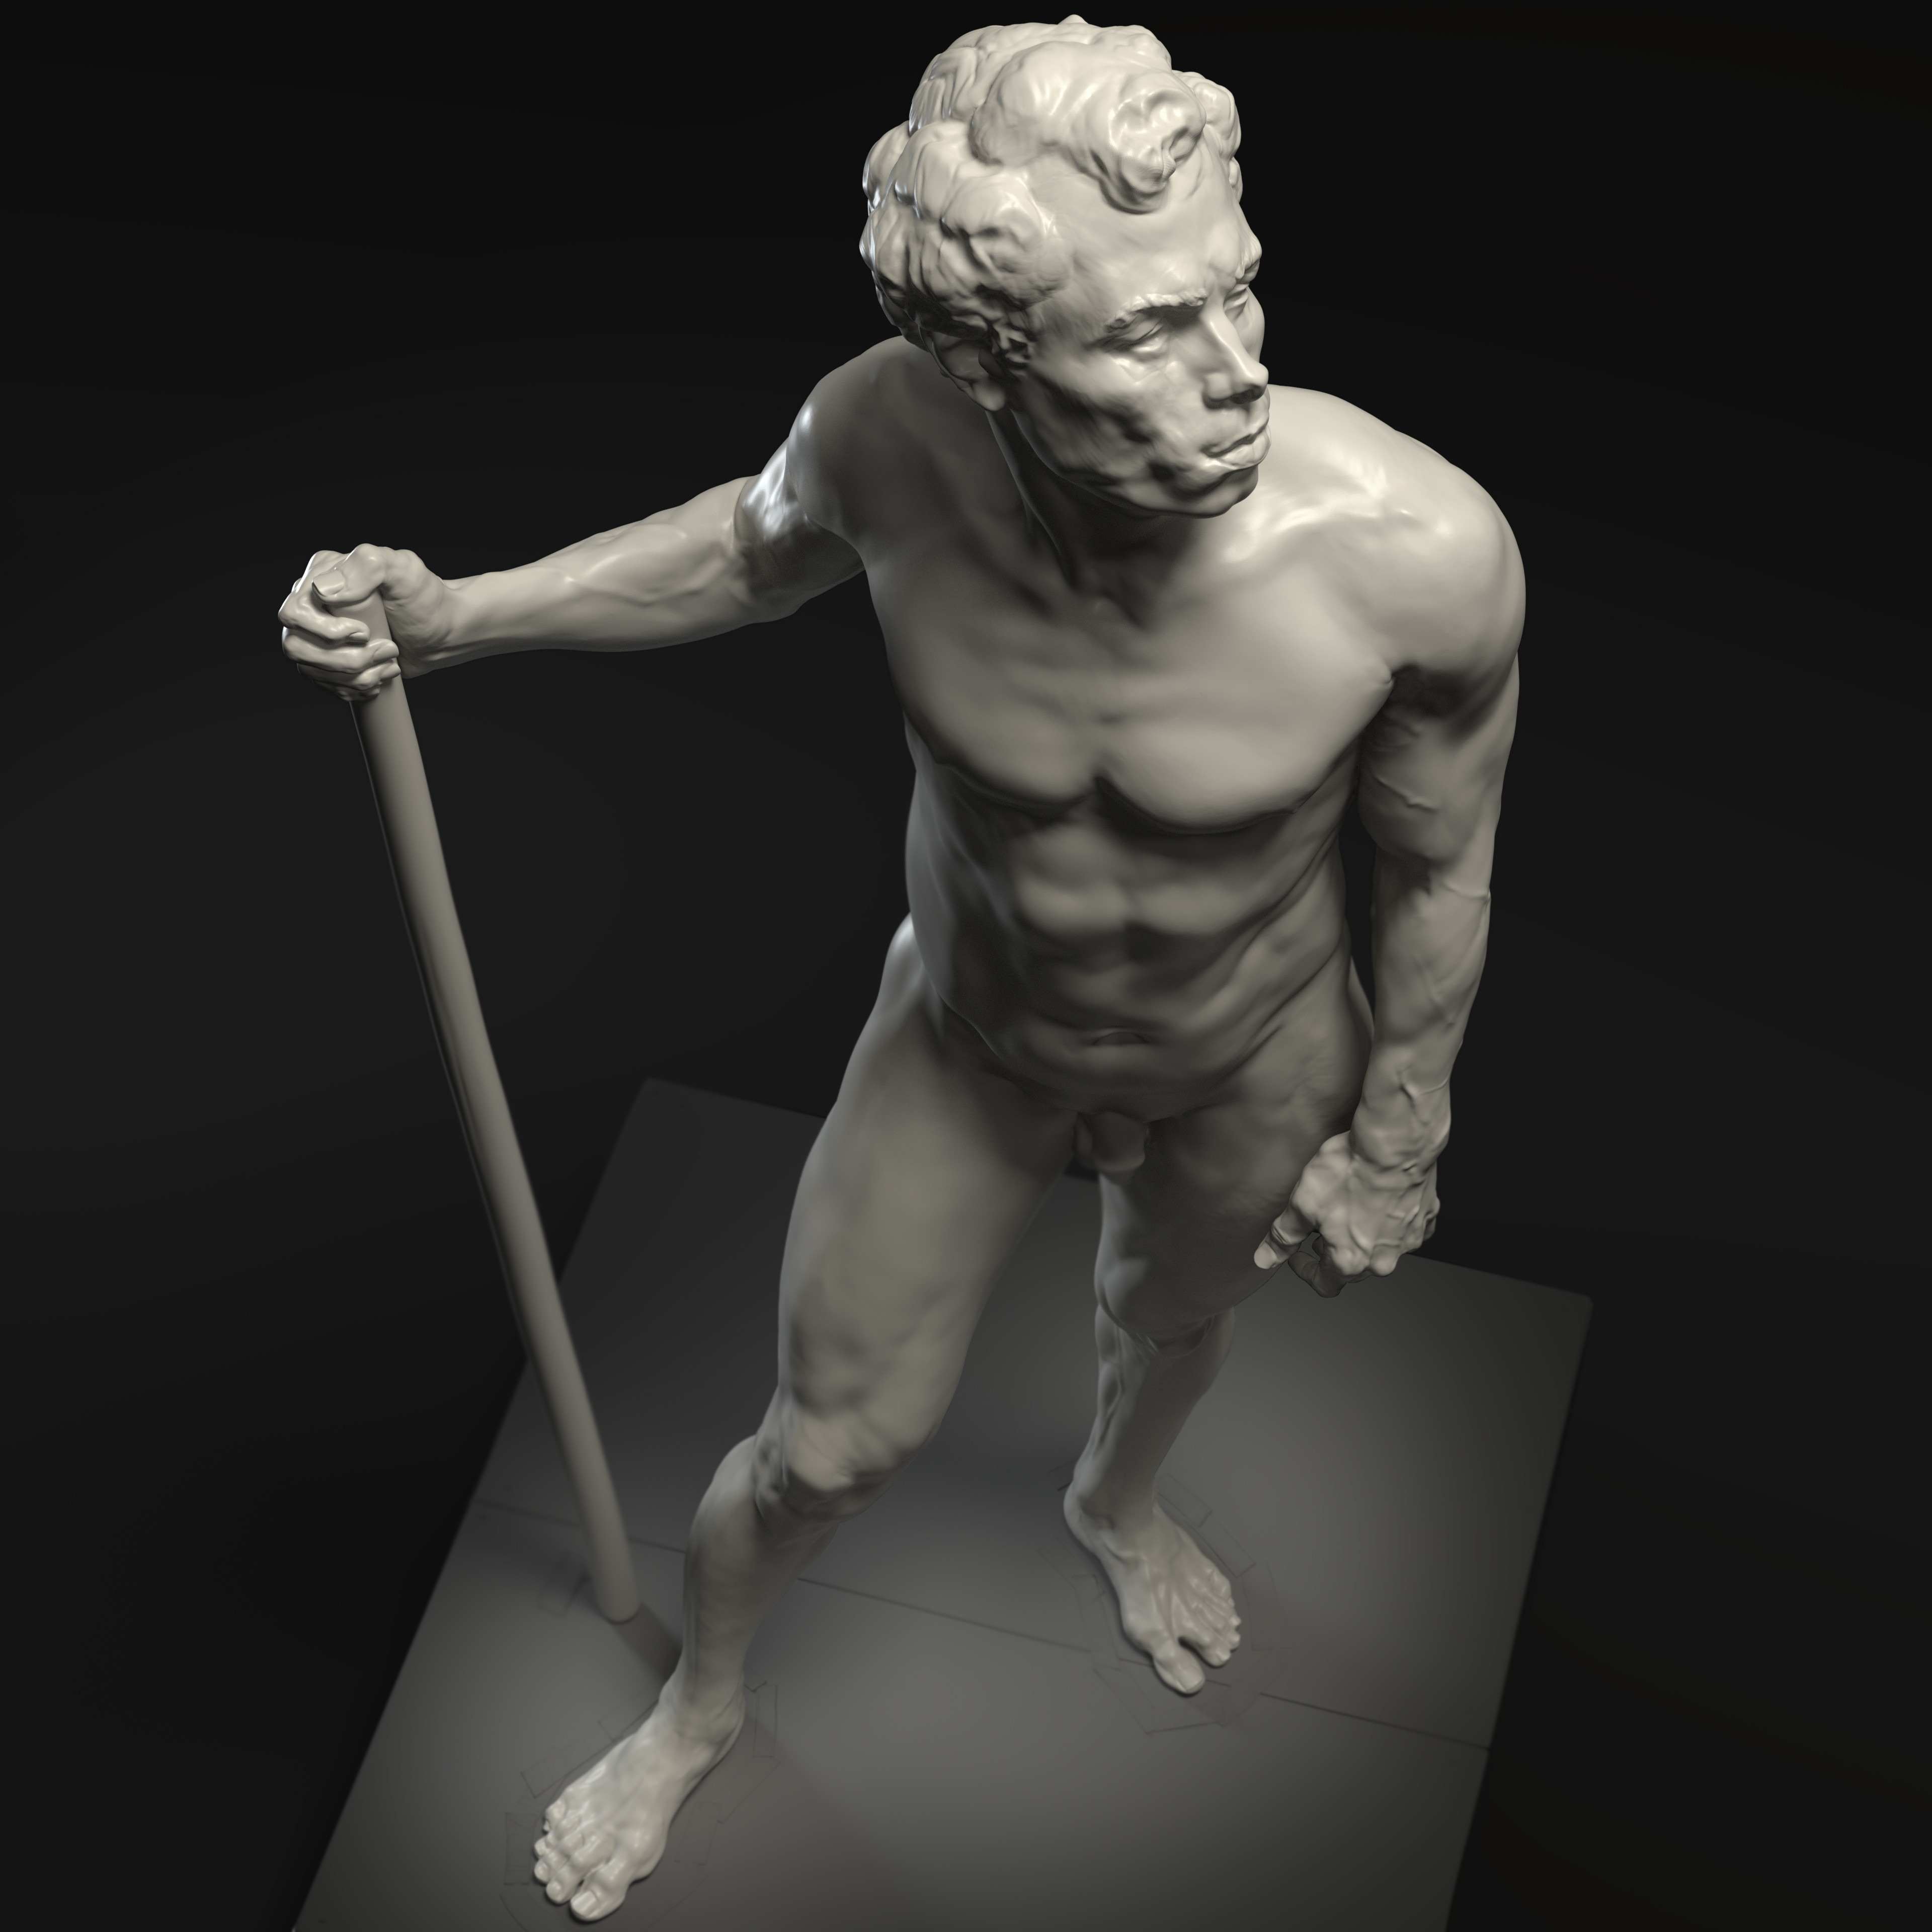 Alfons - Life model sculpting 